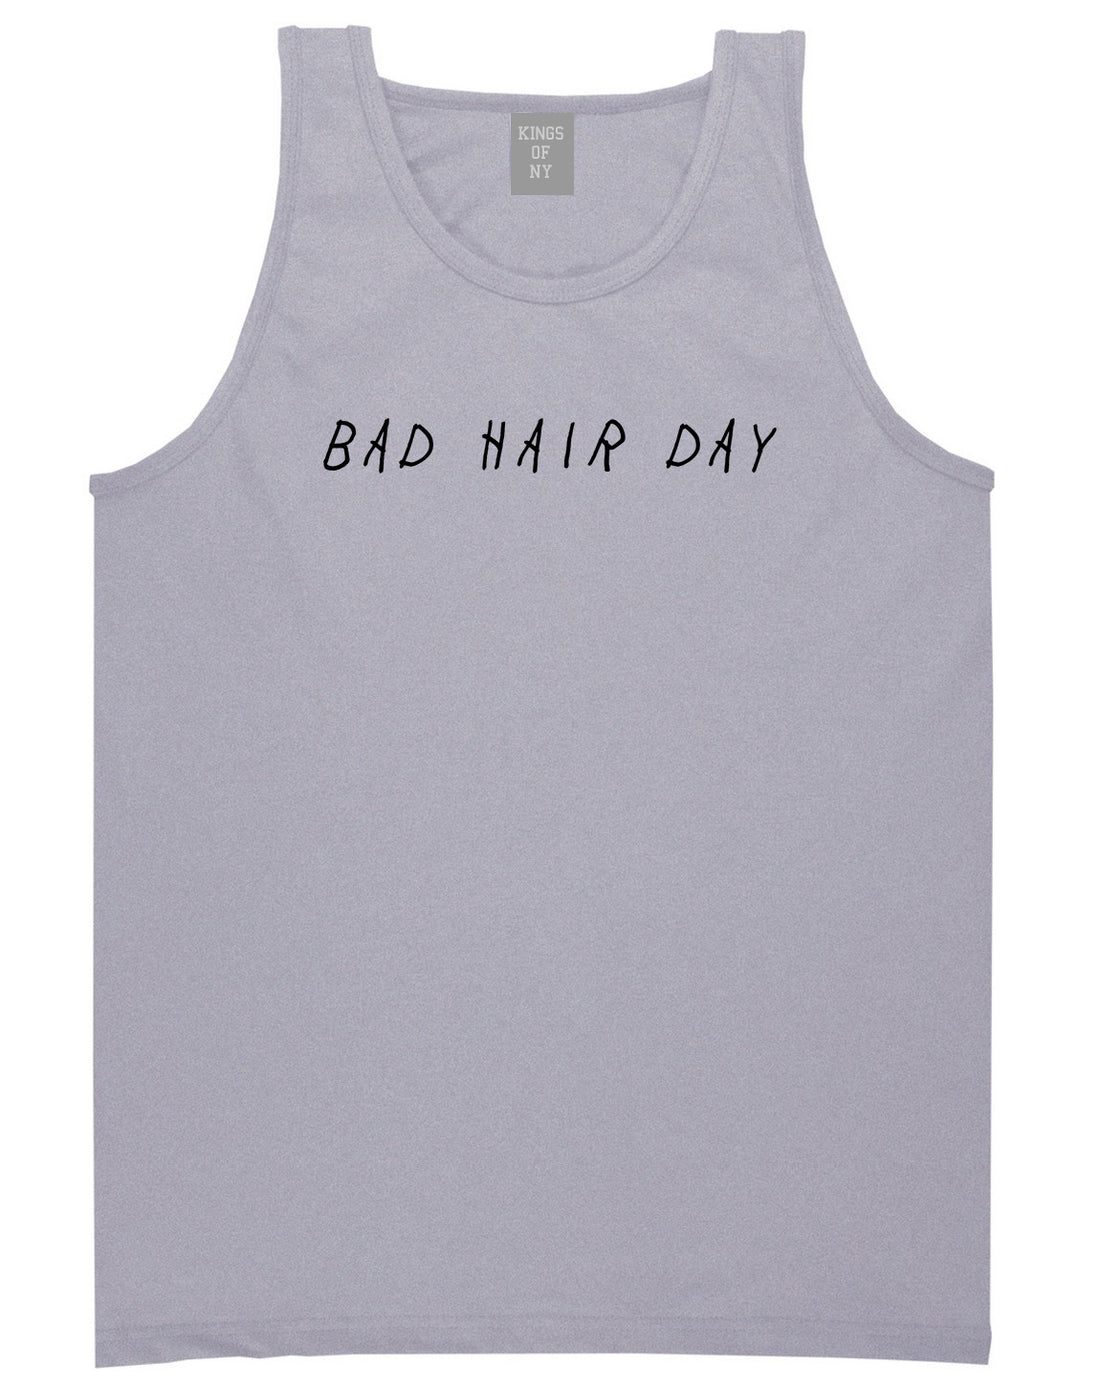 Bad Hair Day Grey Tank Top Shirt by Kings Of NY